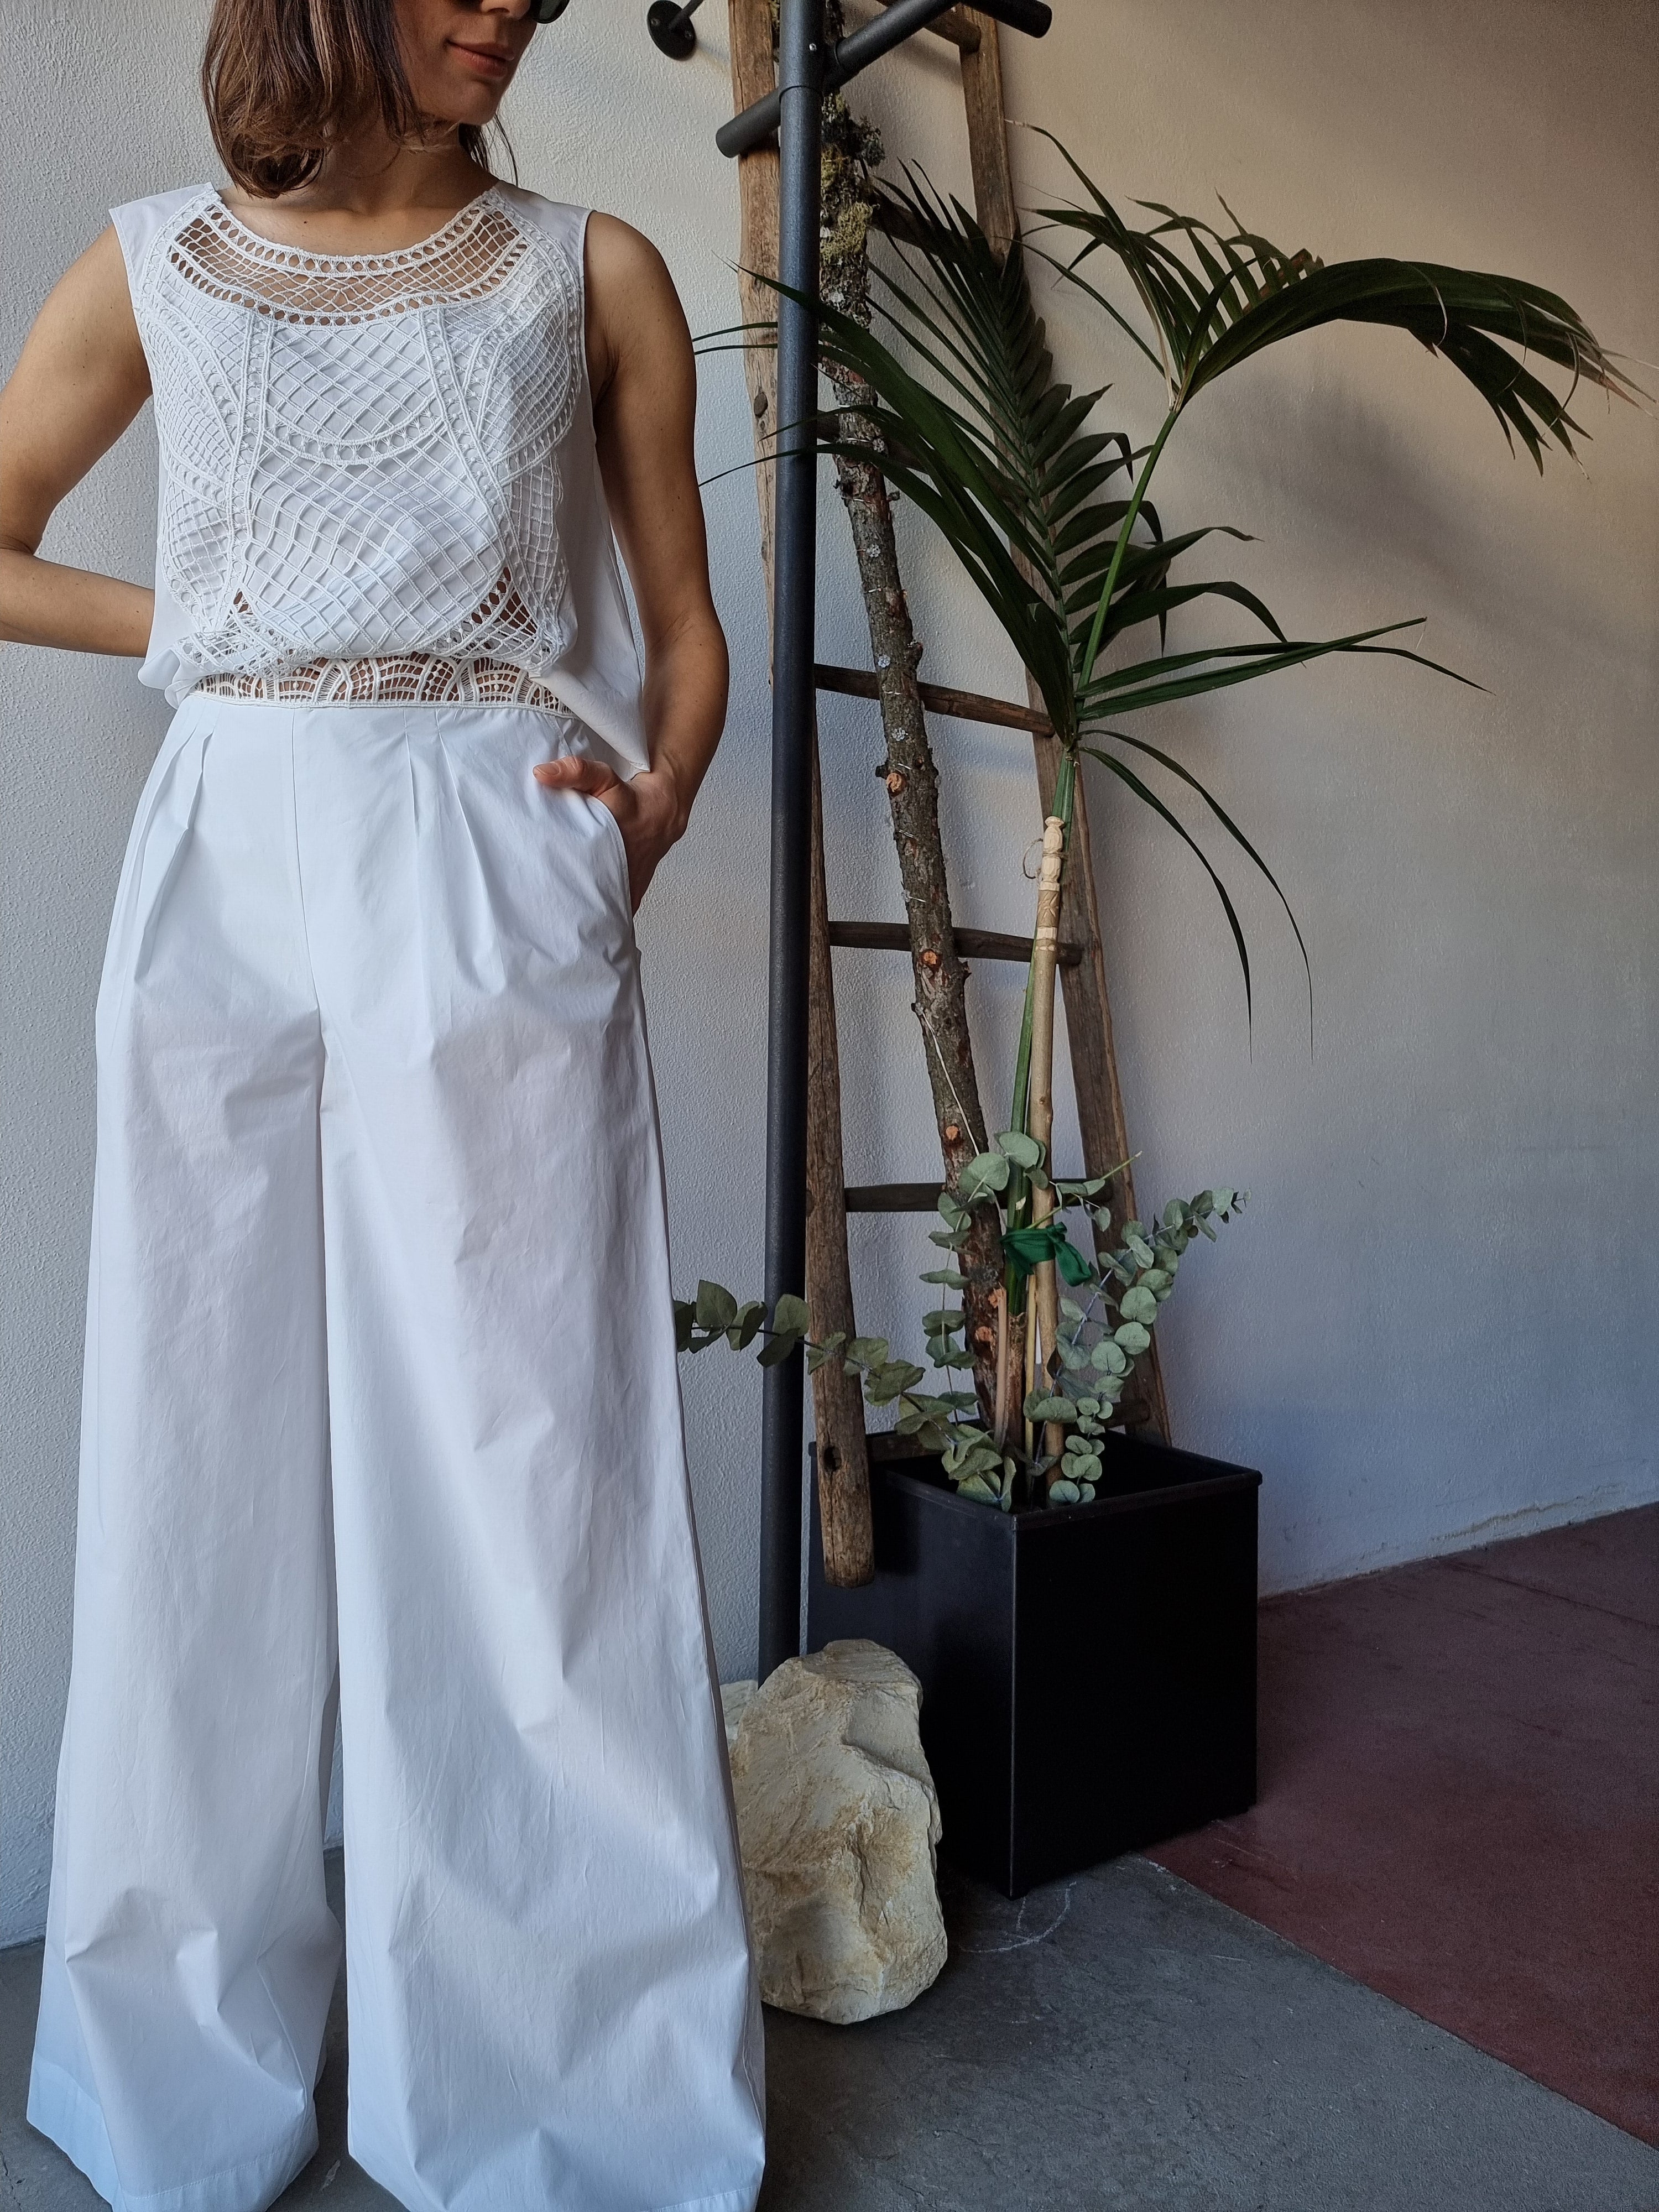 Alberta Ferretti – Pantalone bianco con macramé